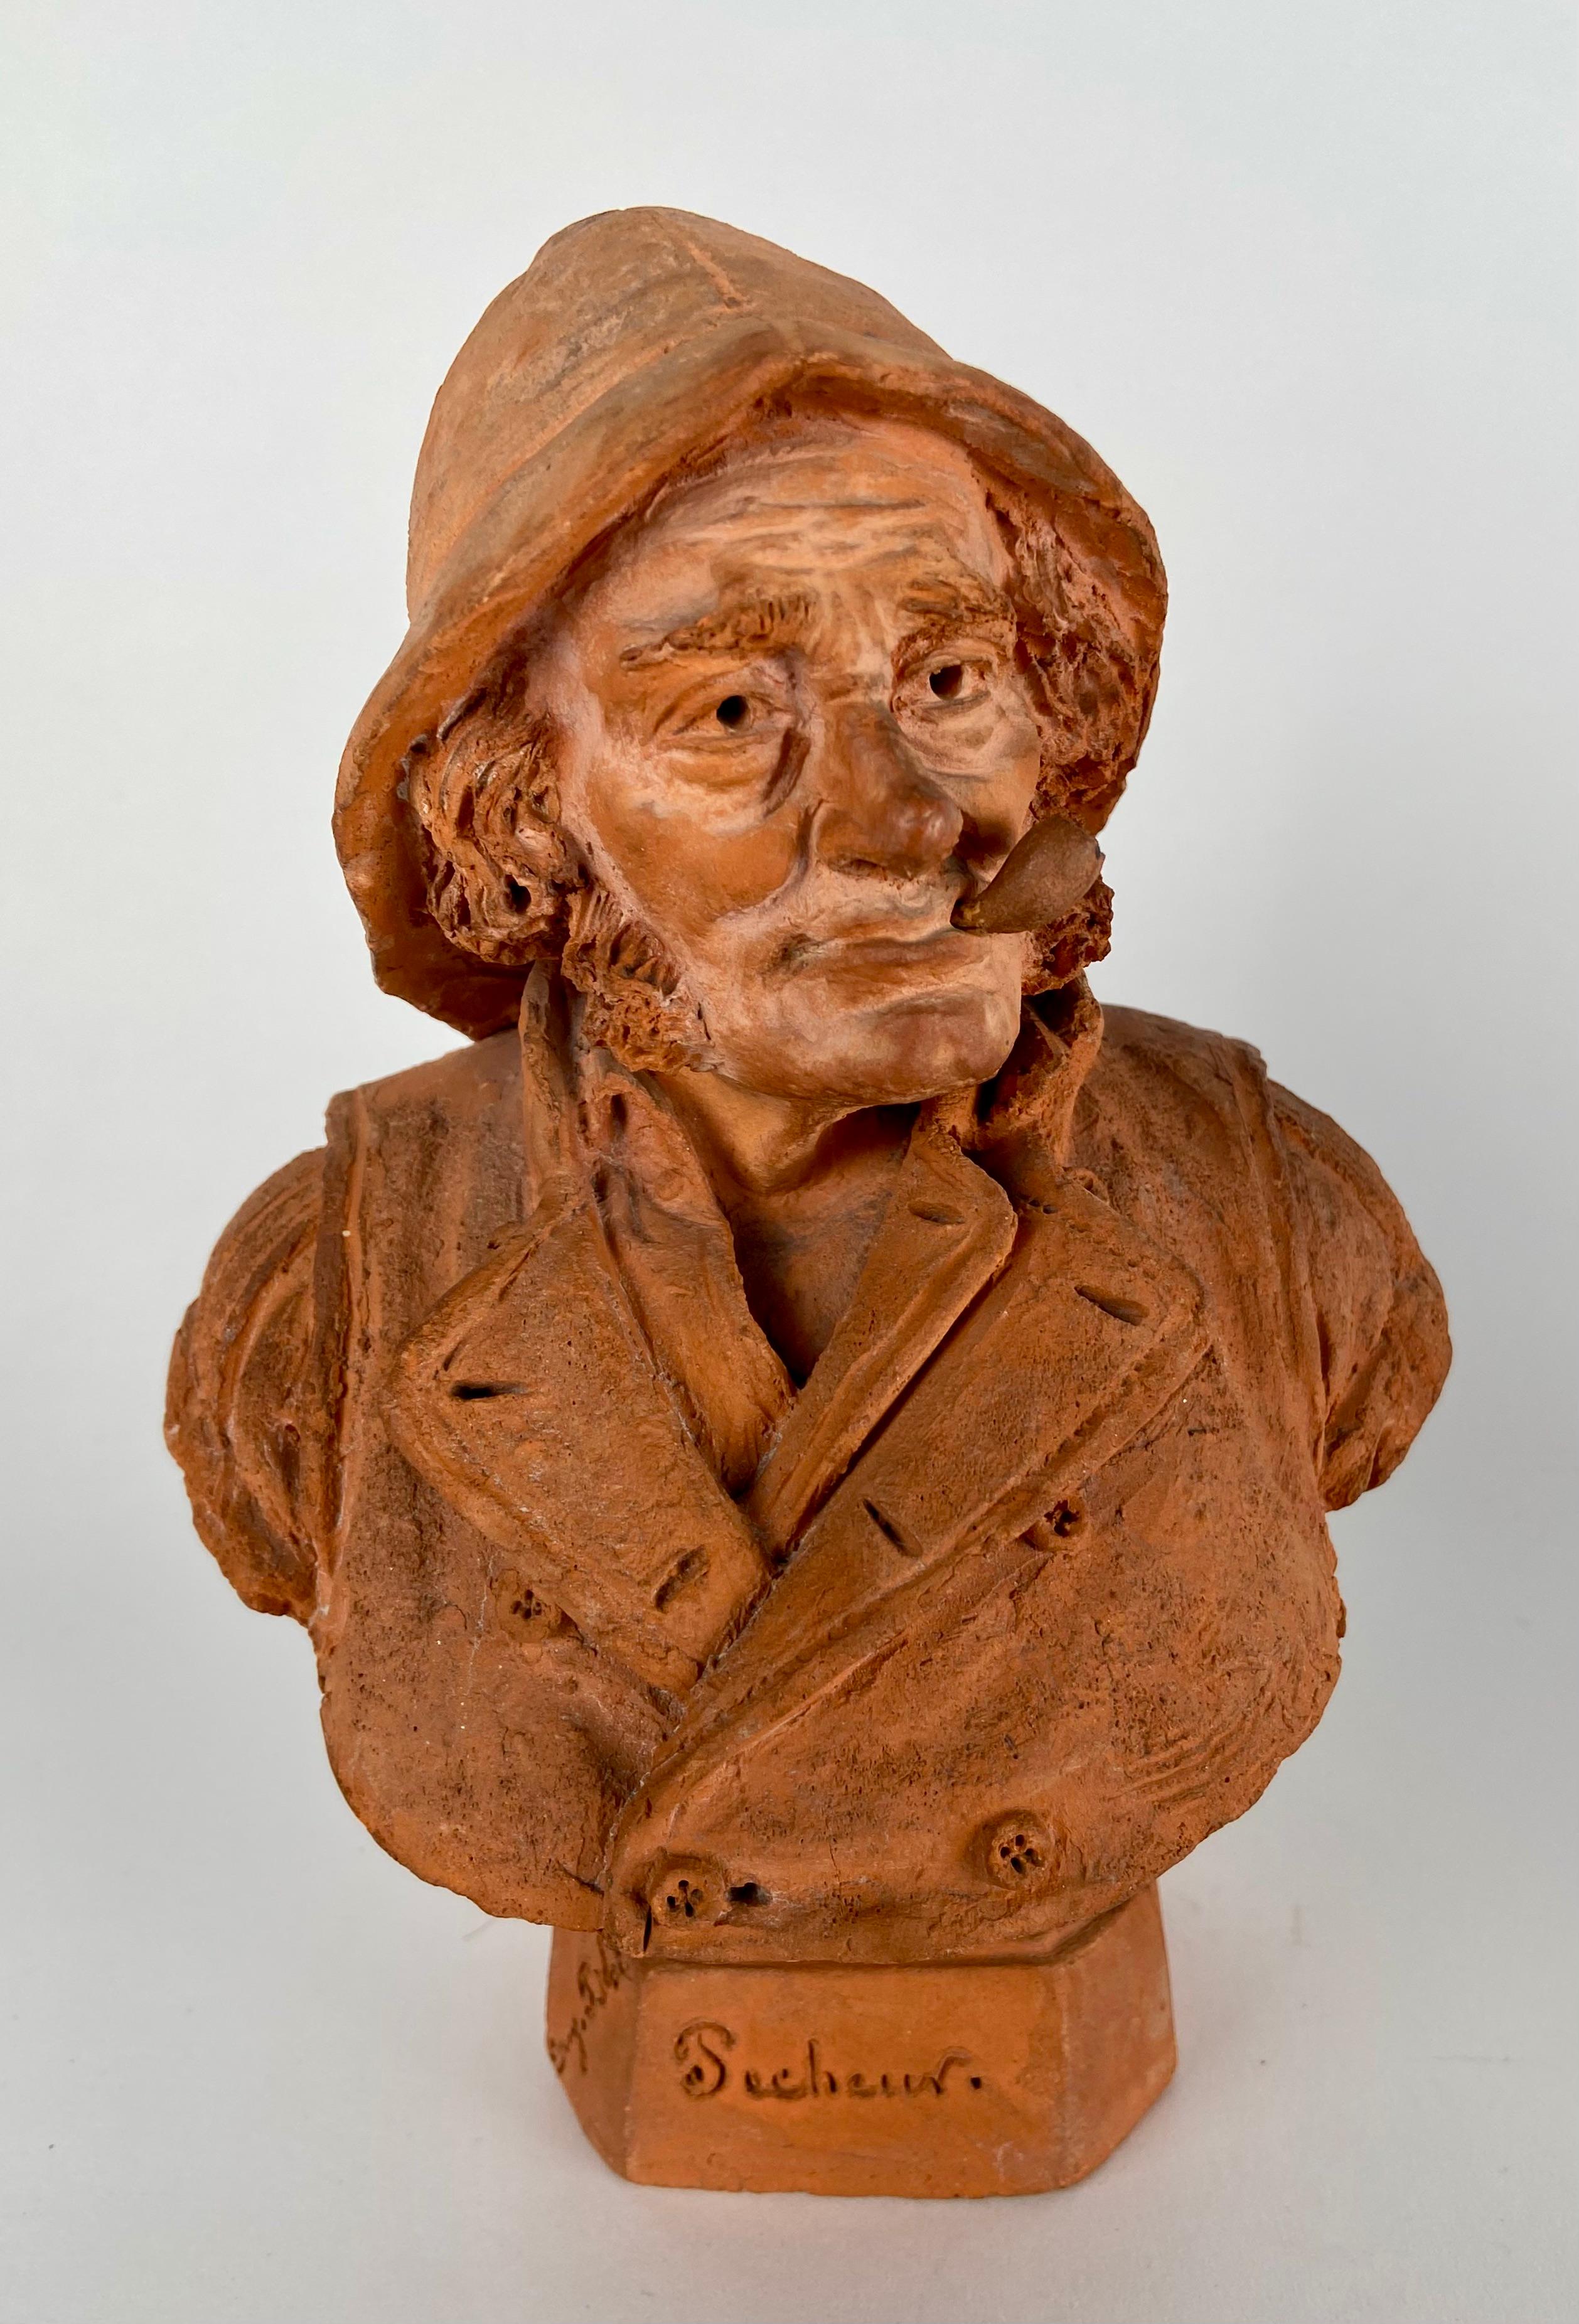 Provincial français Eugène Blot, paire de petits bustes en terre cuite en vente